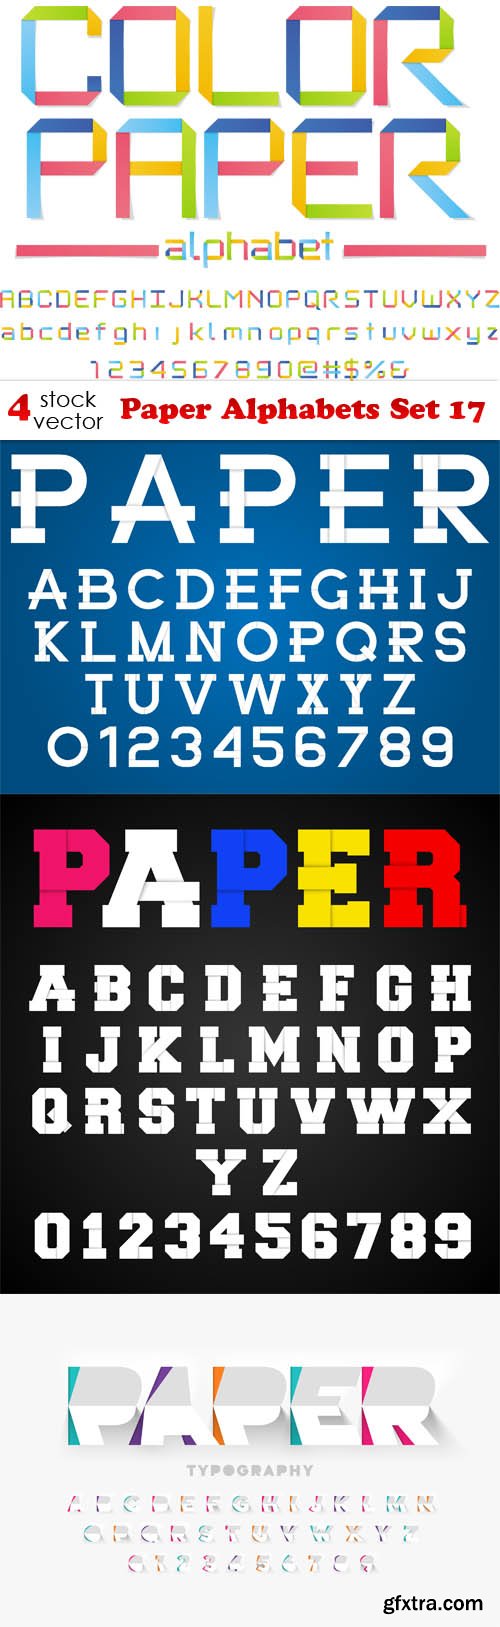 Vectors - Paper Alphabets Set 17